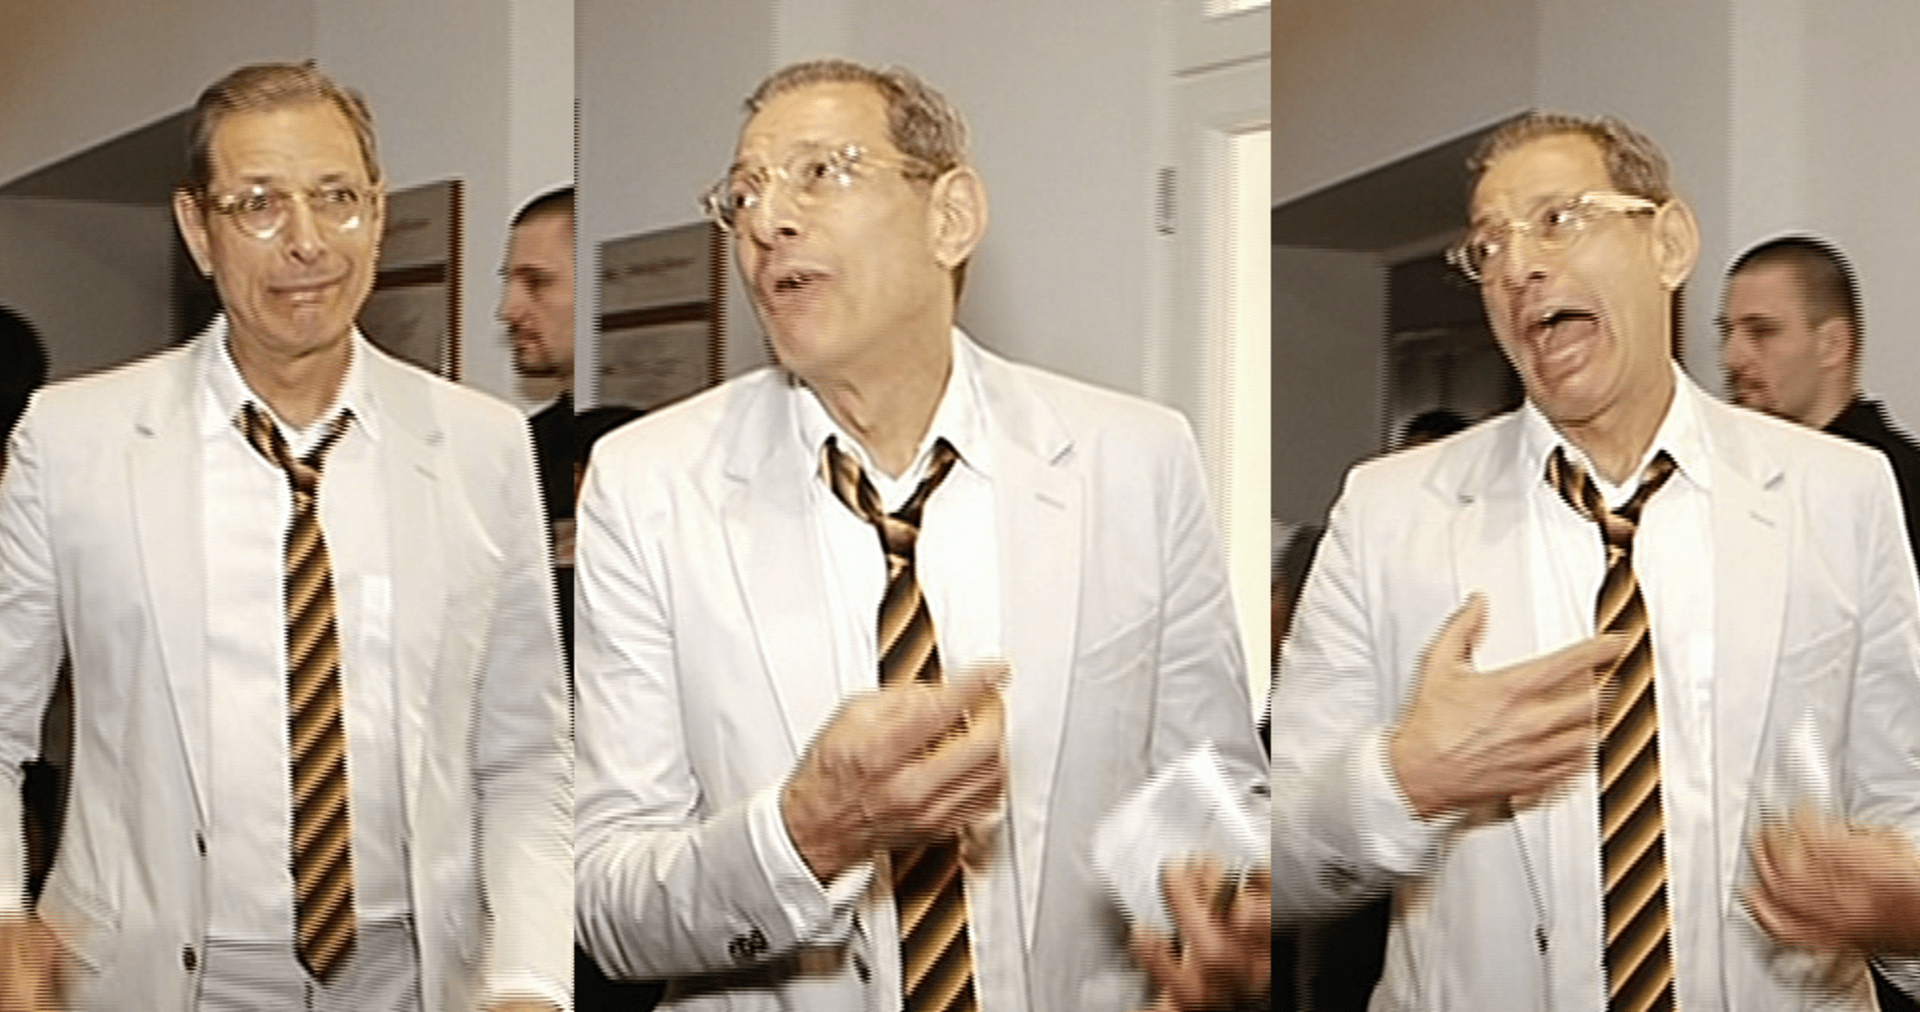 Video VIP zprávy: Jeff Goldblum je opravdu showman. Podívejte se!